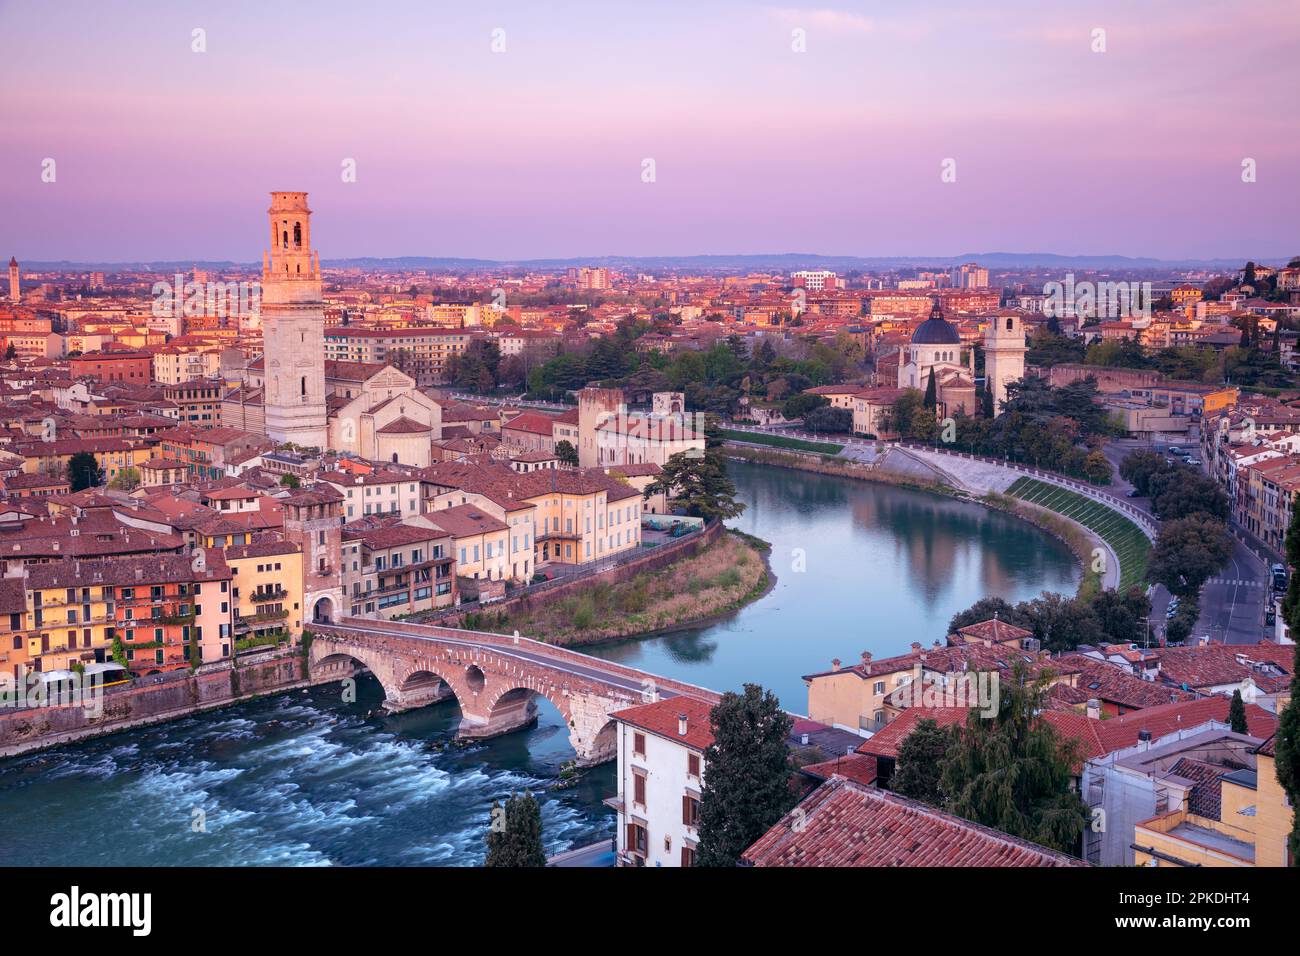 Verona, Italia. Immagine aerea del paesaggio urbano di Verona, Italia all'alba primaverile. Foto Stock